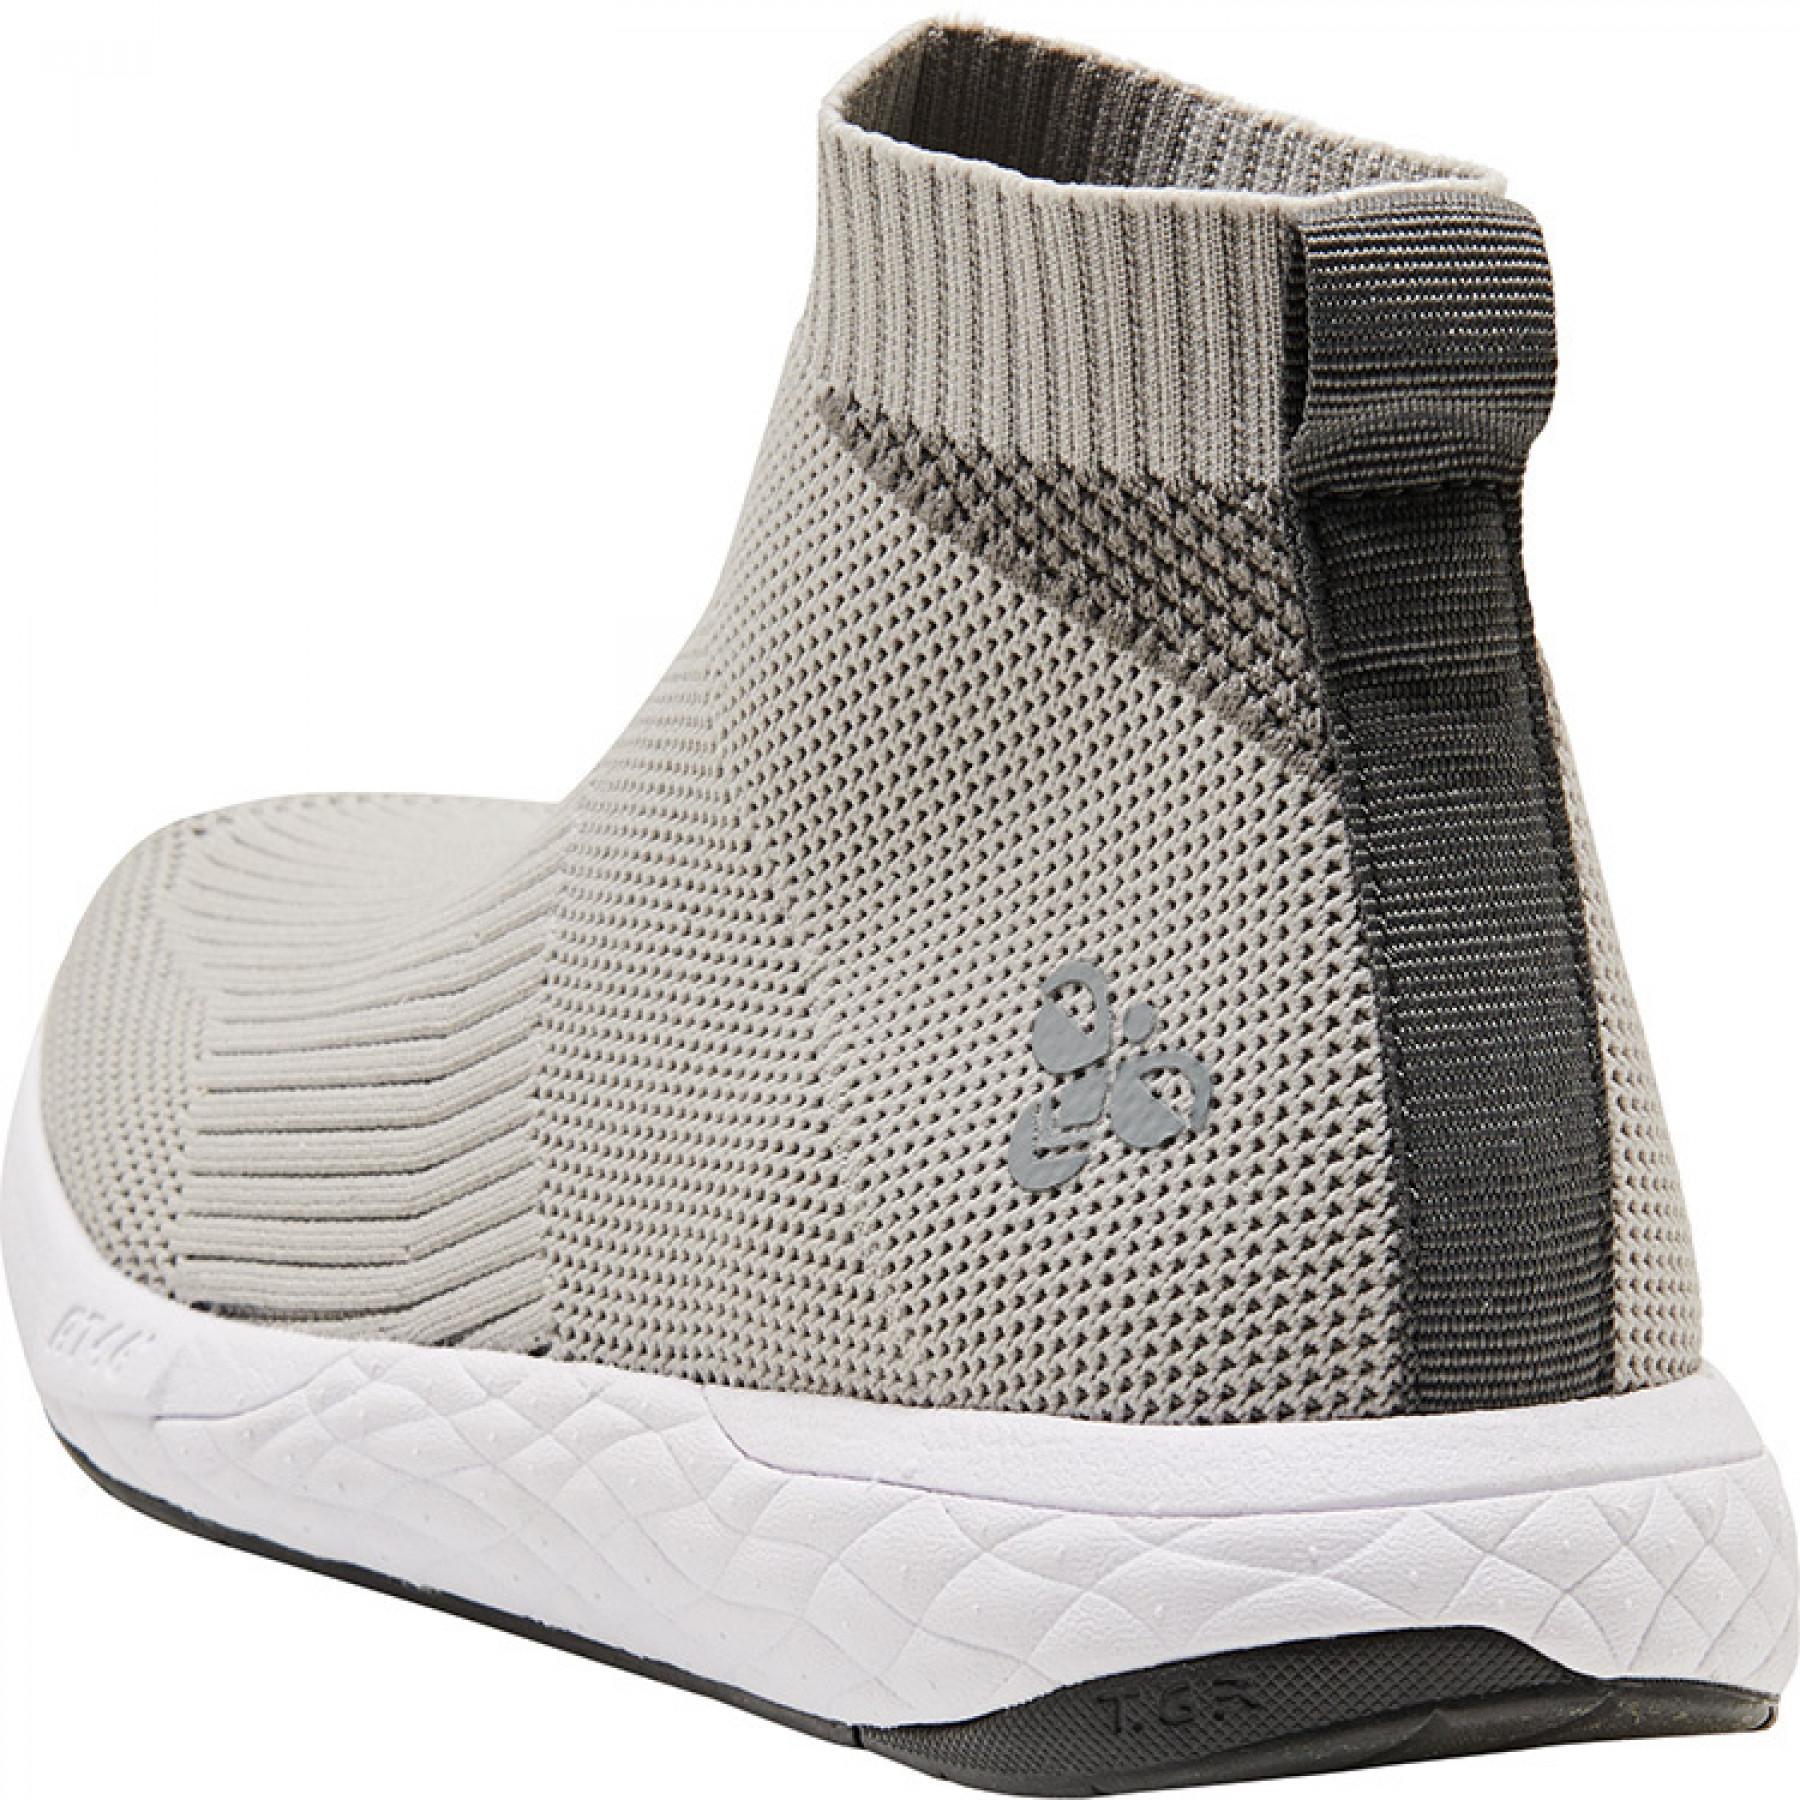 Sneakers Hummel terrafly knit boot